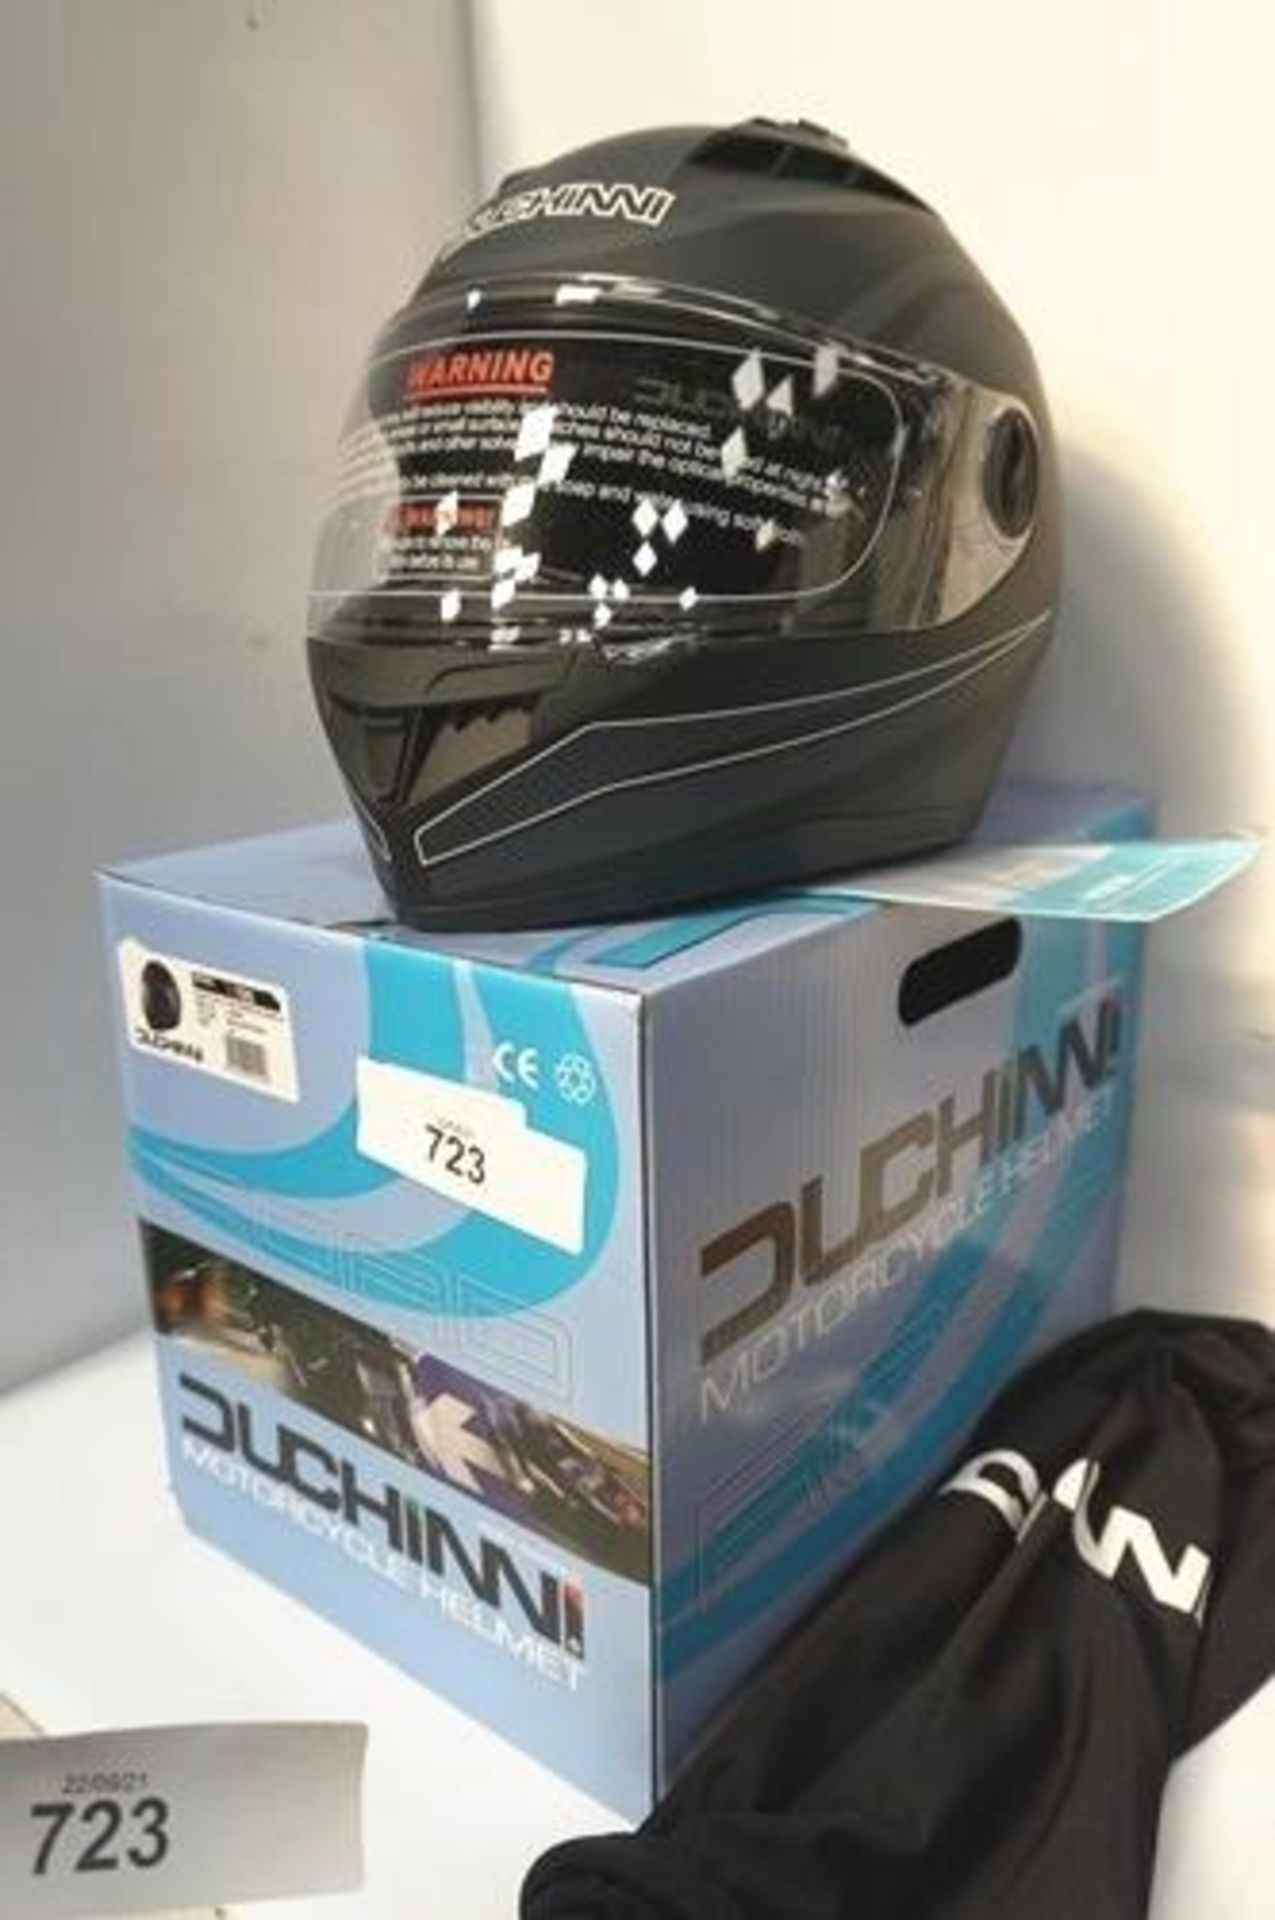 1 x Duchinni M black/gun motorcycle helmet, model D705, size LA - New in box (GS15)